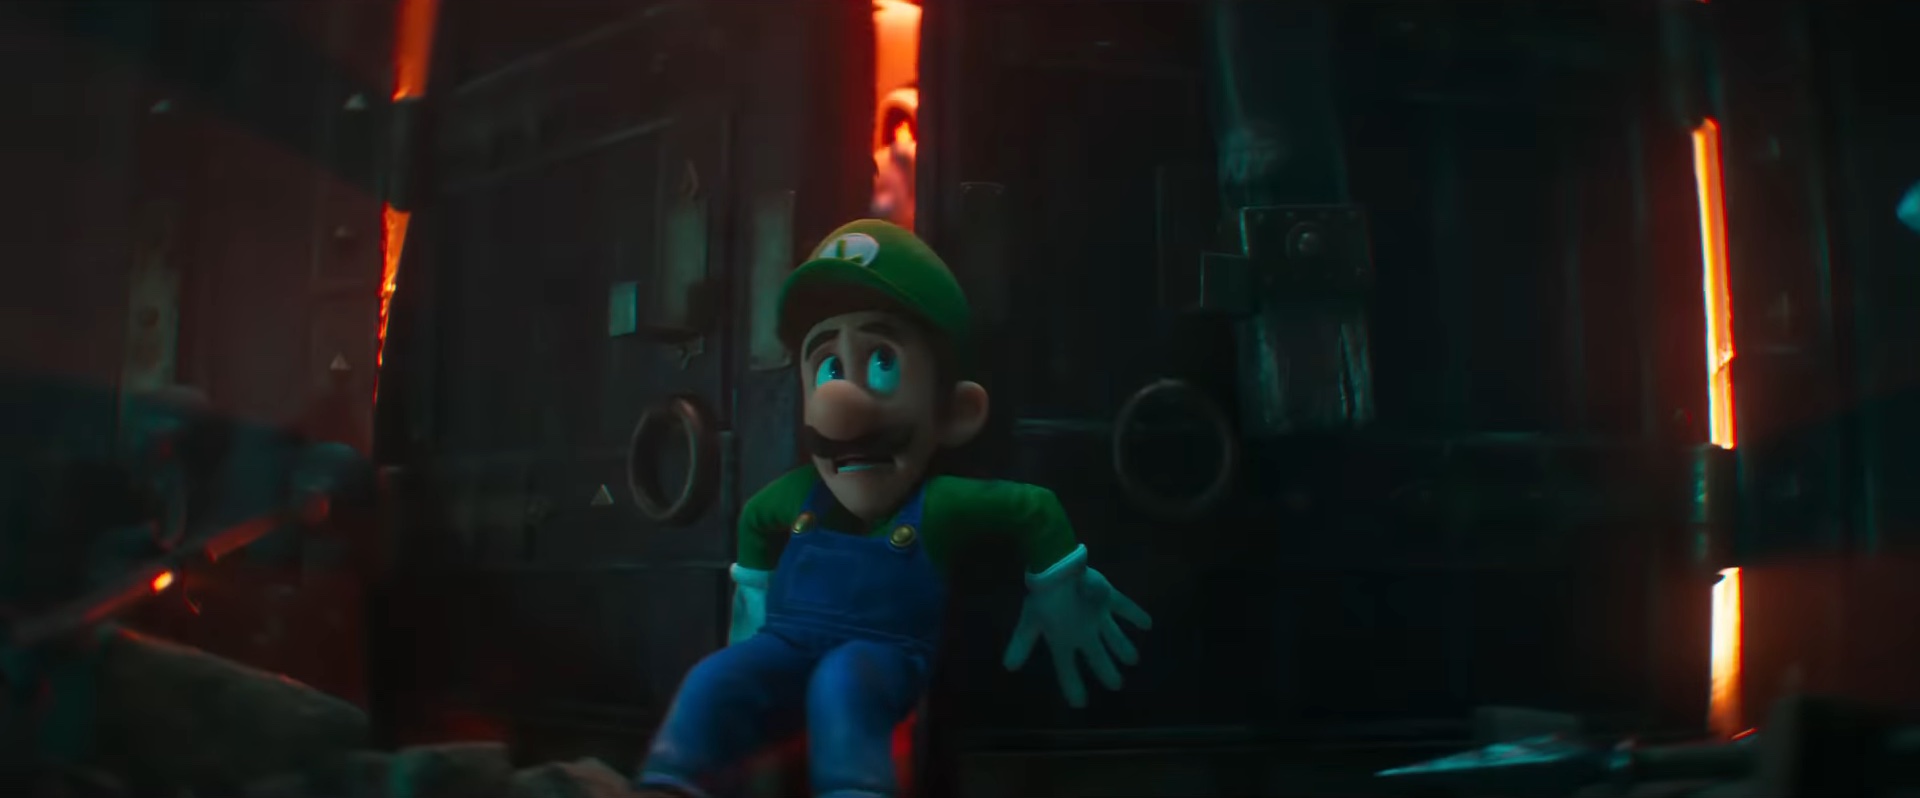 Luigi contra uma porta enquanto Dry Bones tenta capturá-lo em "The Super Mario Bros. Movie".